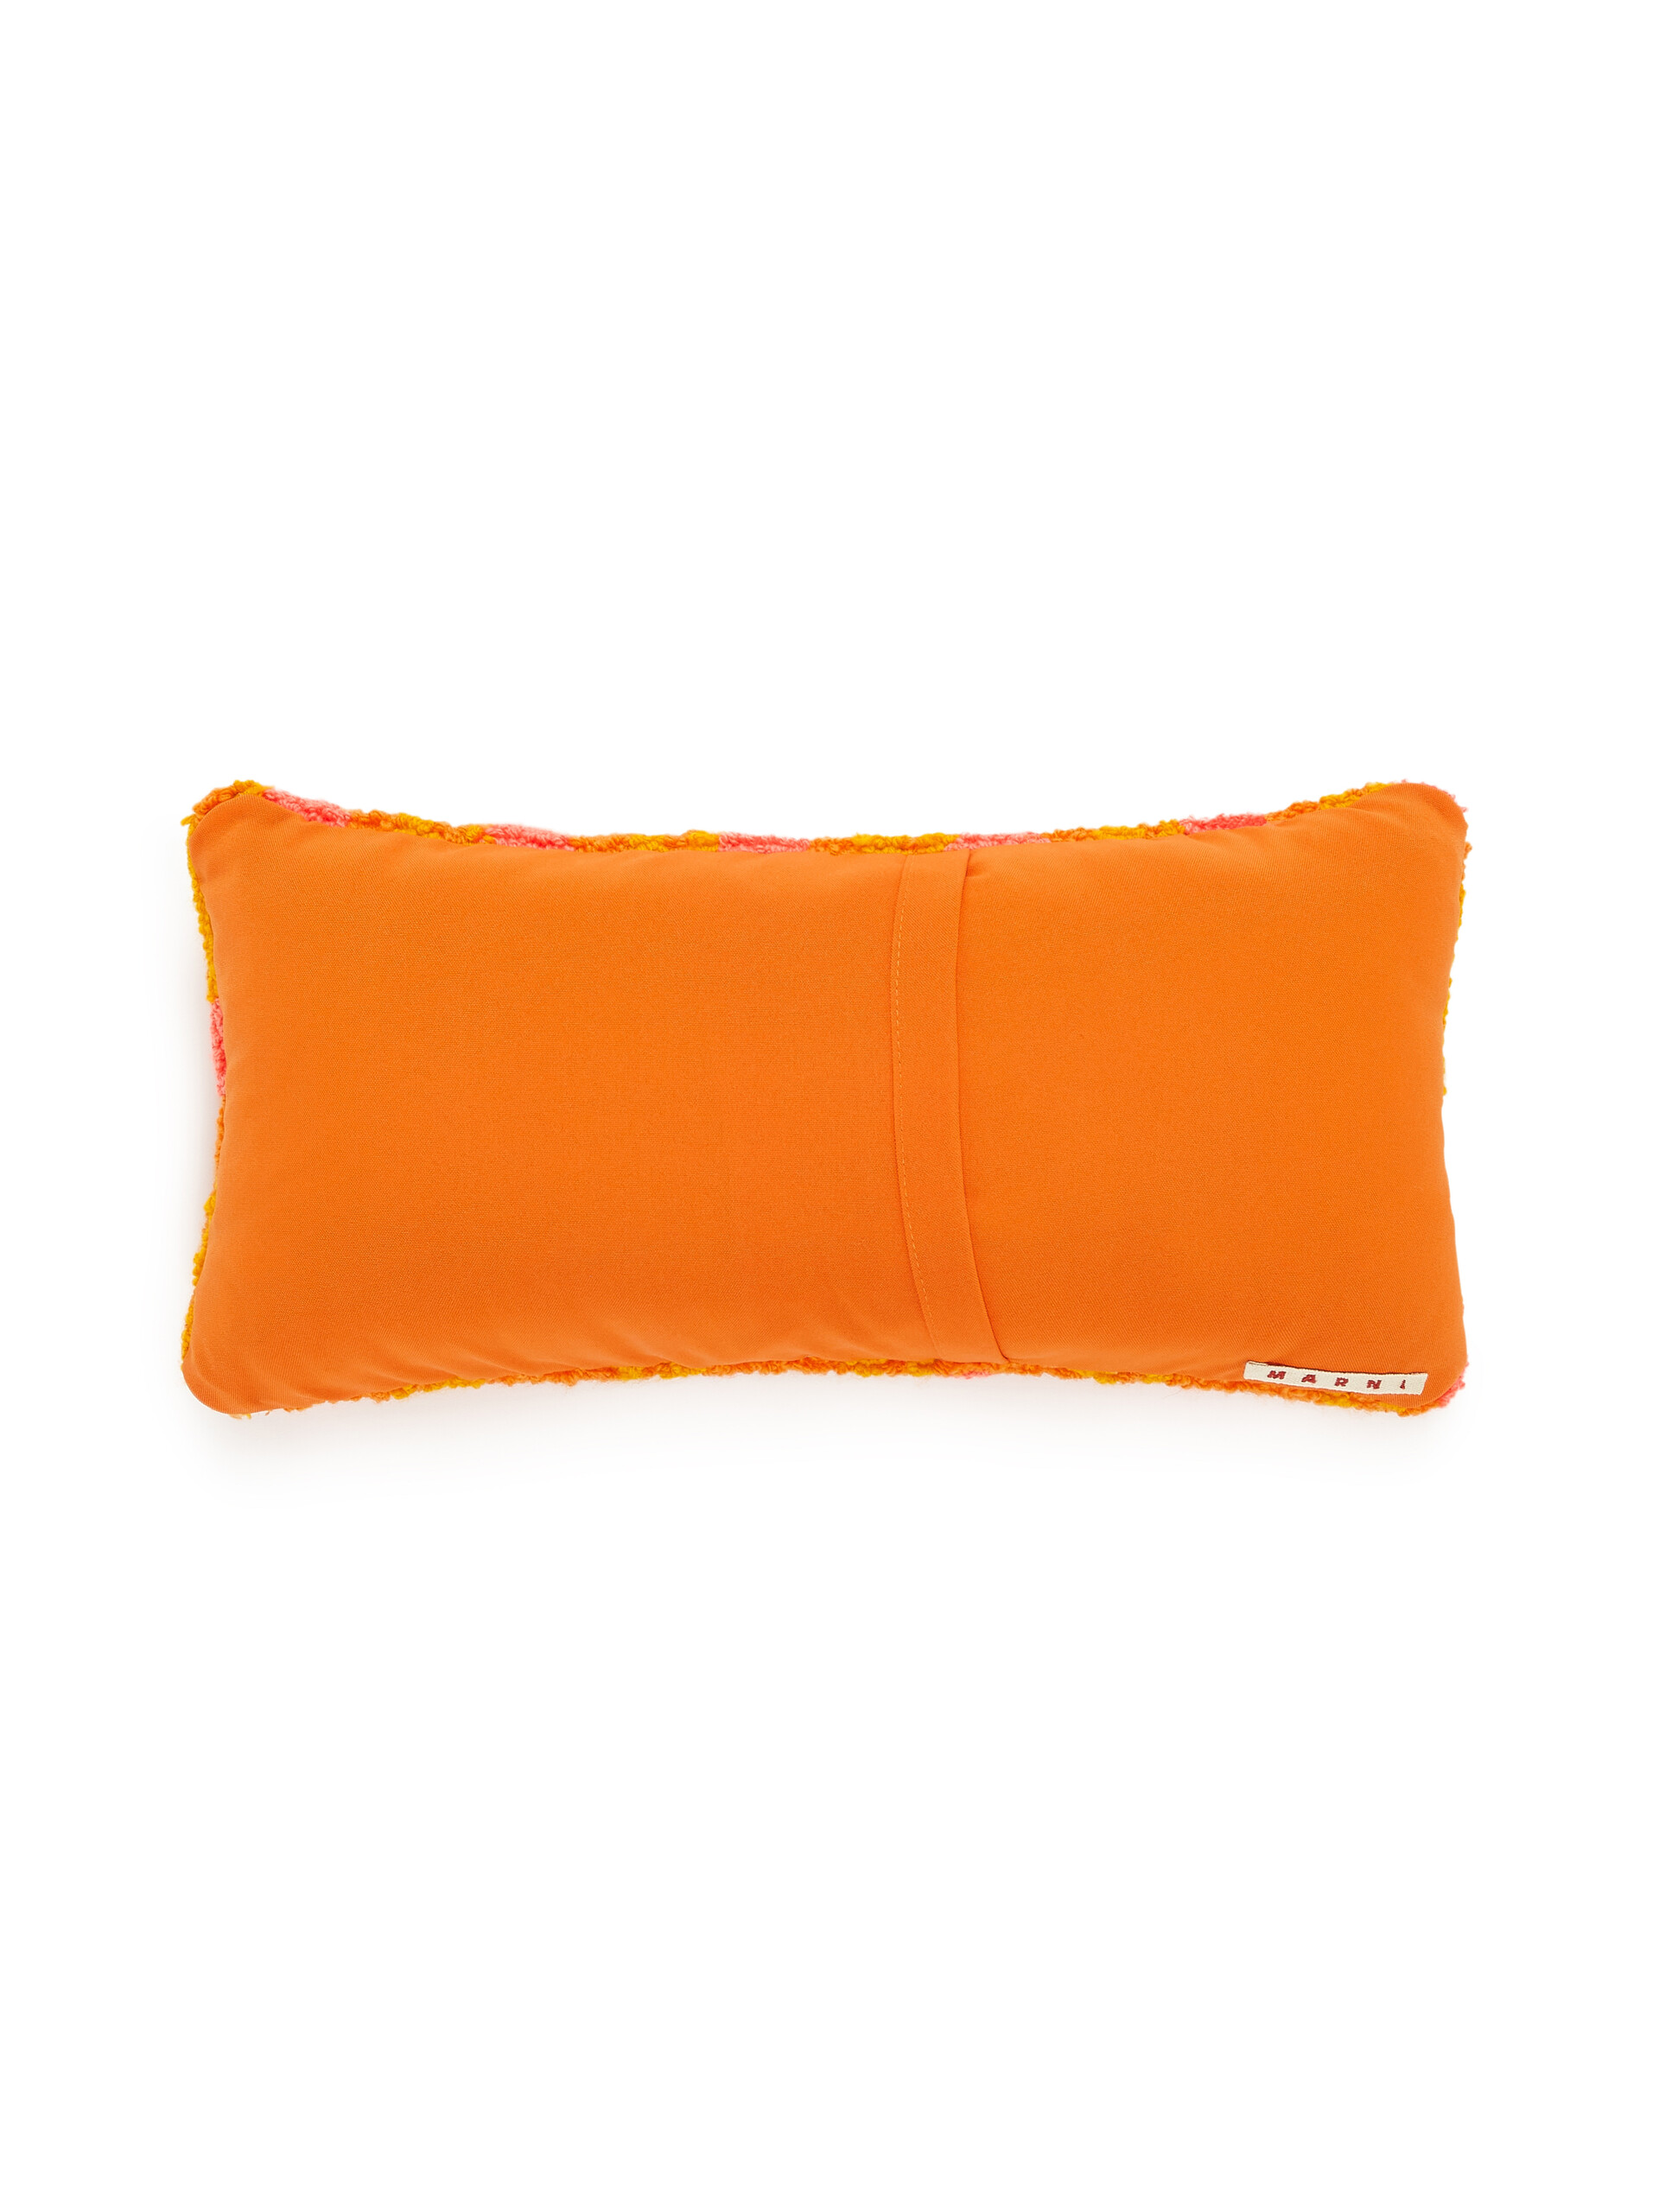 Cuscino MARNI MARKET in tessuto tecnico arancio multicolor - Arredamento - Image 2